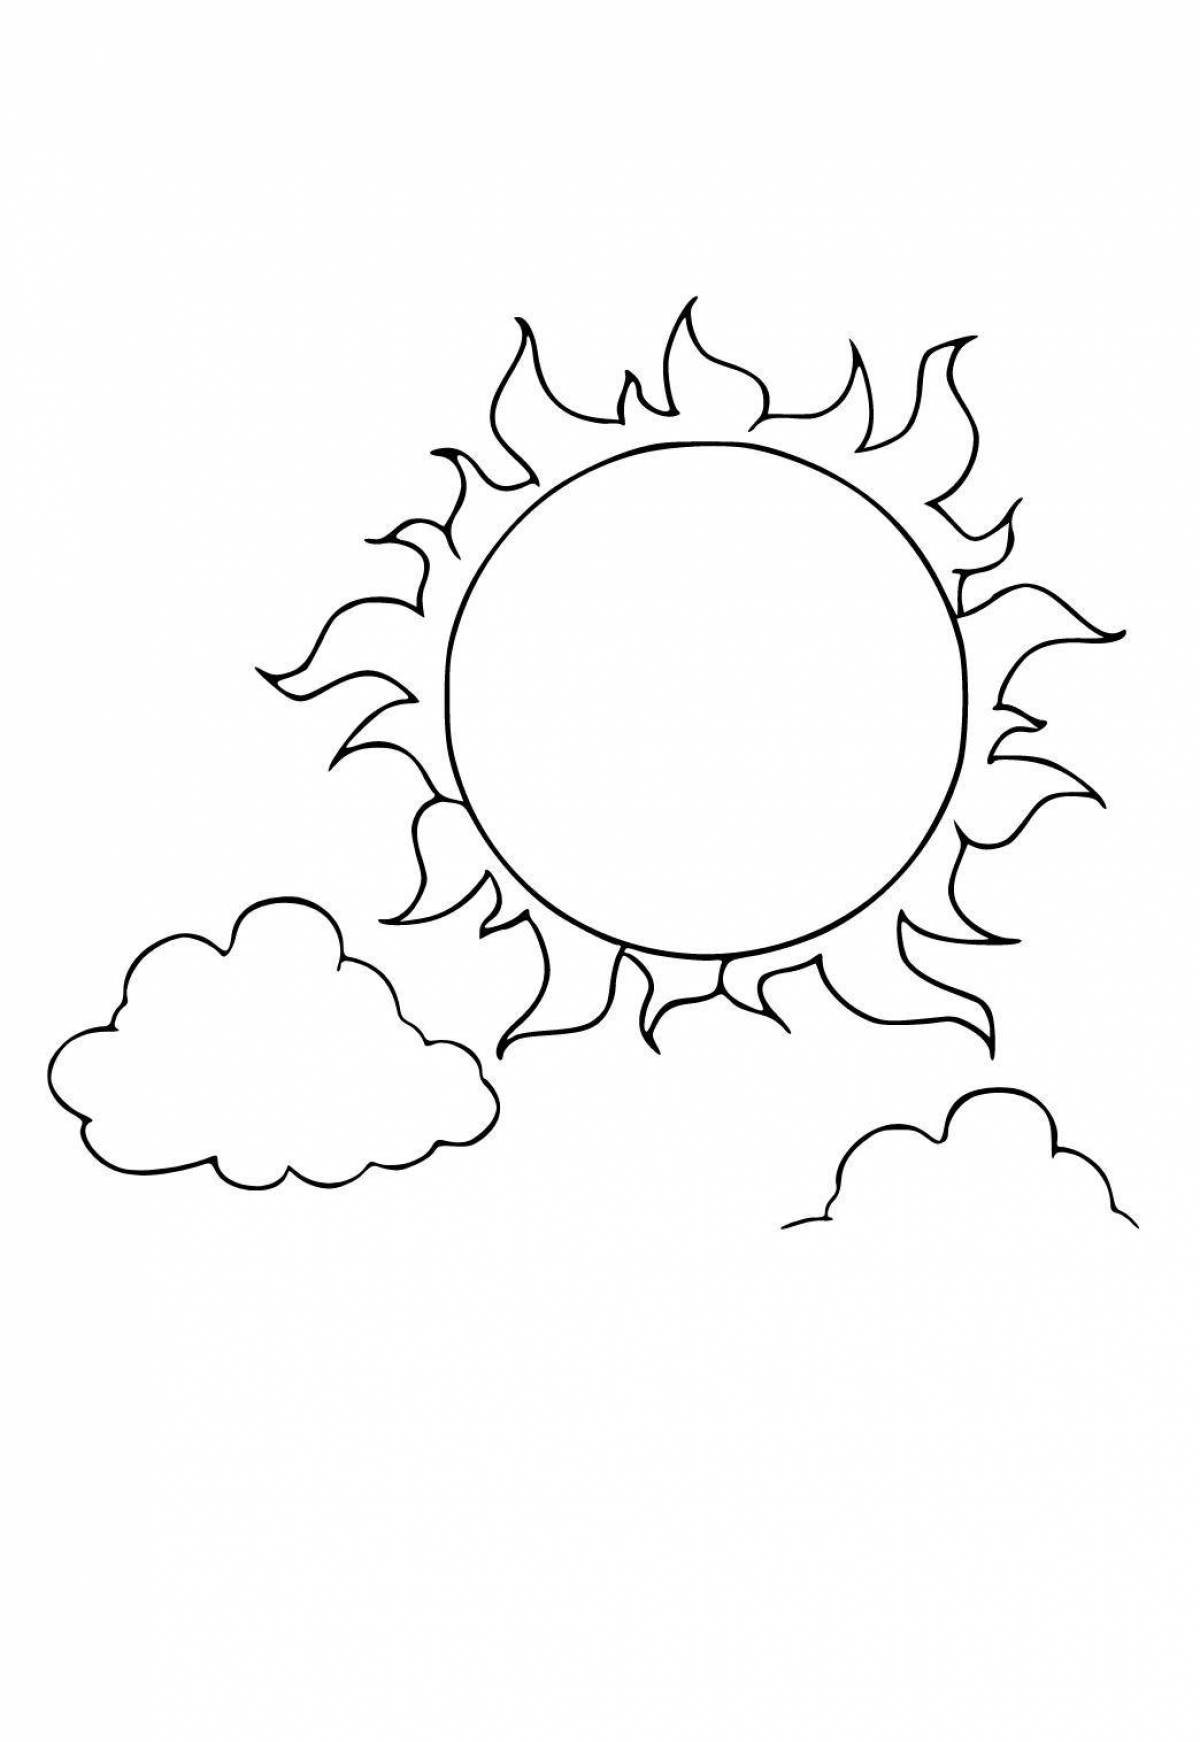 Ликующая раскраска солнце для детей 3-4 лет